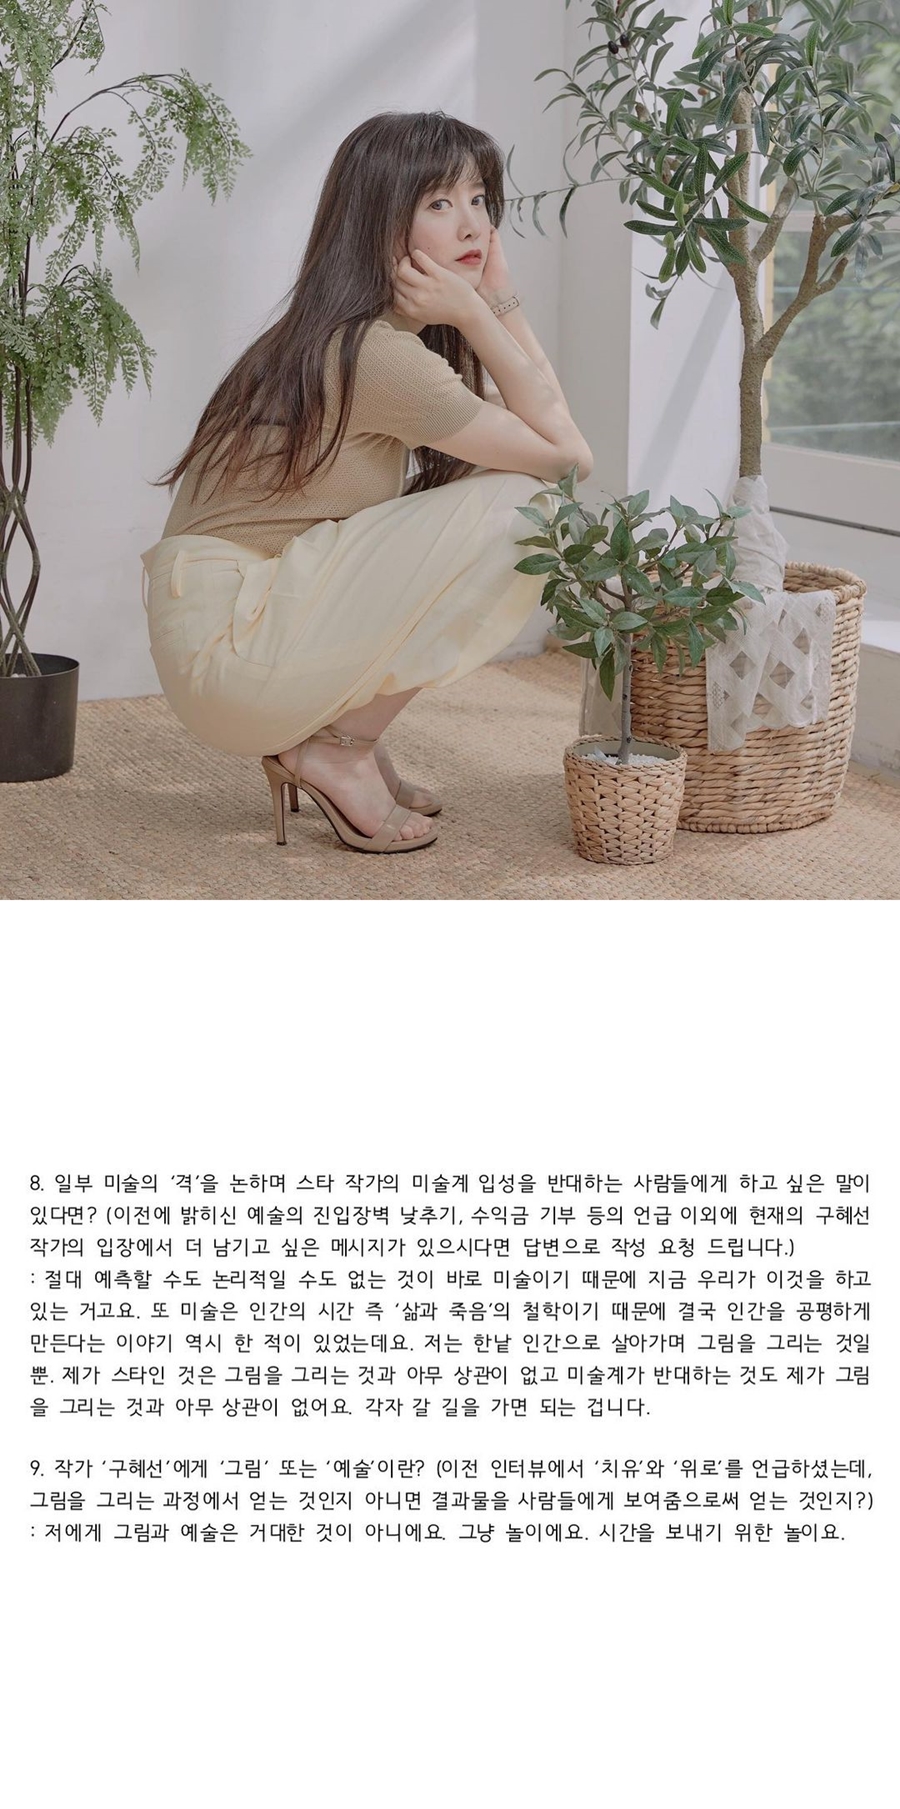 구혜선 미술 관련 인터뷰 / 사진: 구혜선 인스타그램